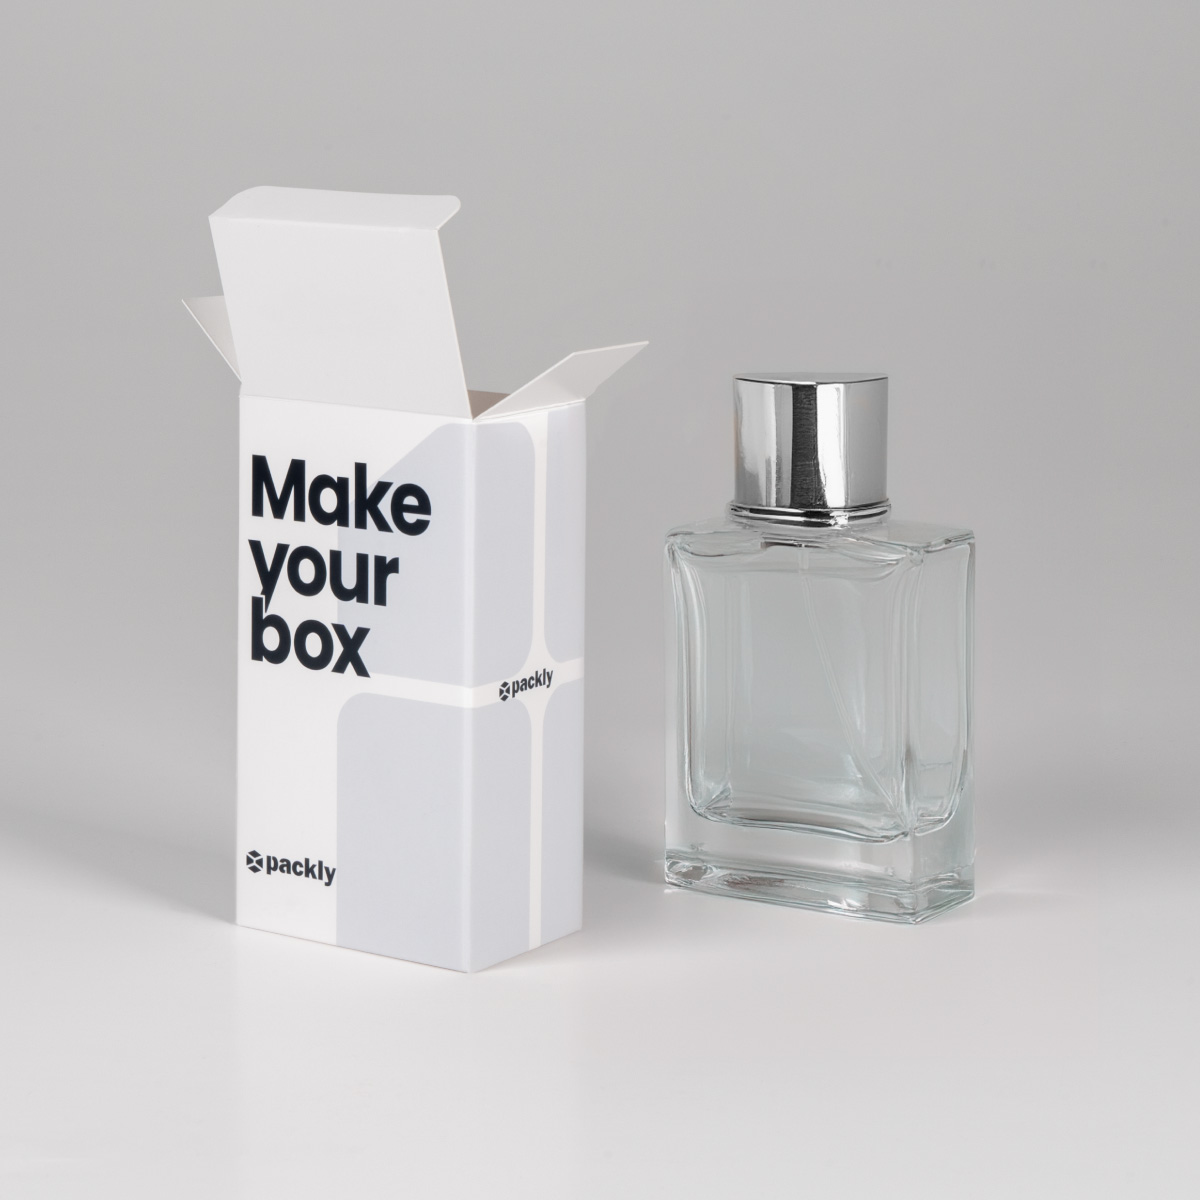 Cosmetic perfume packaging